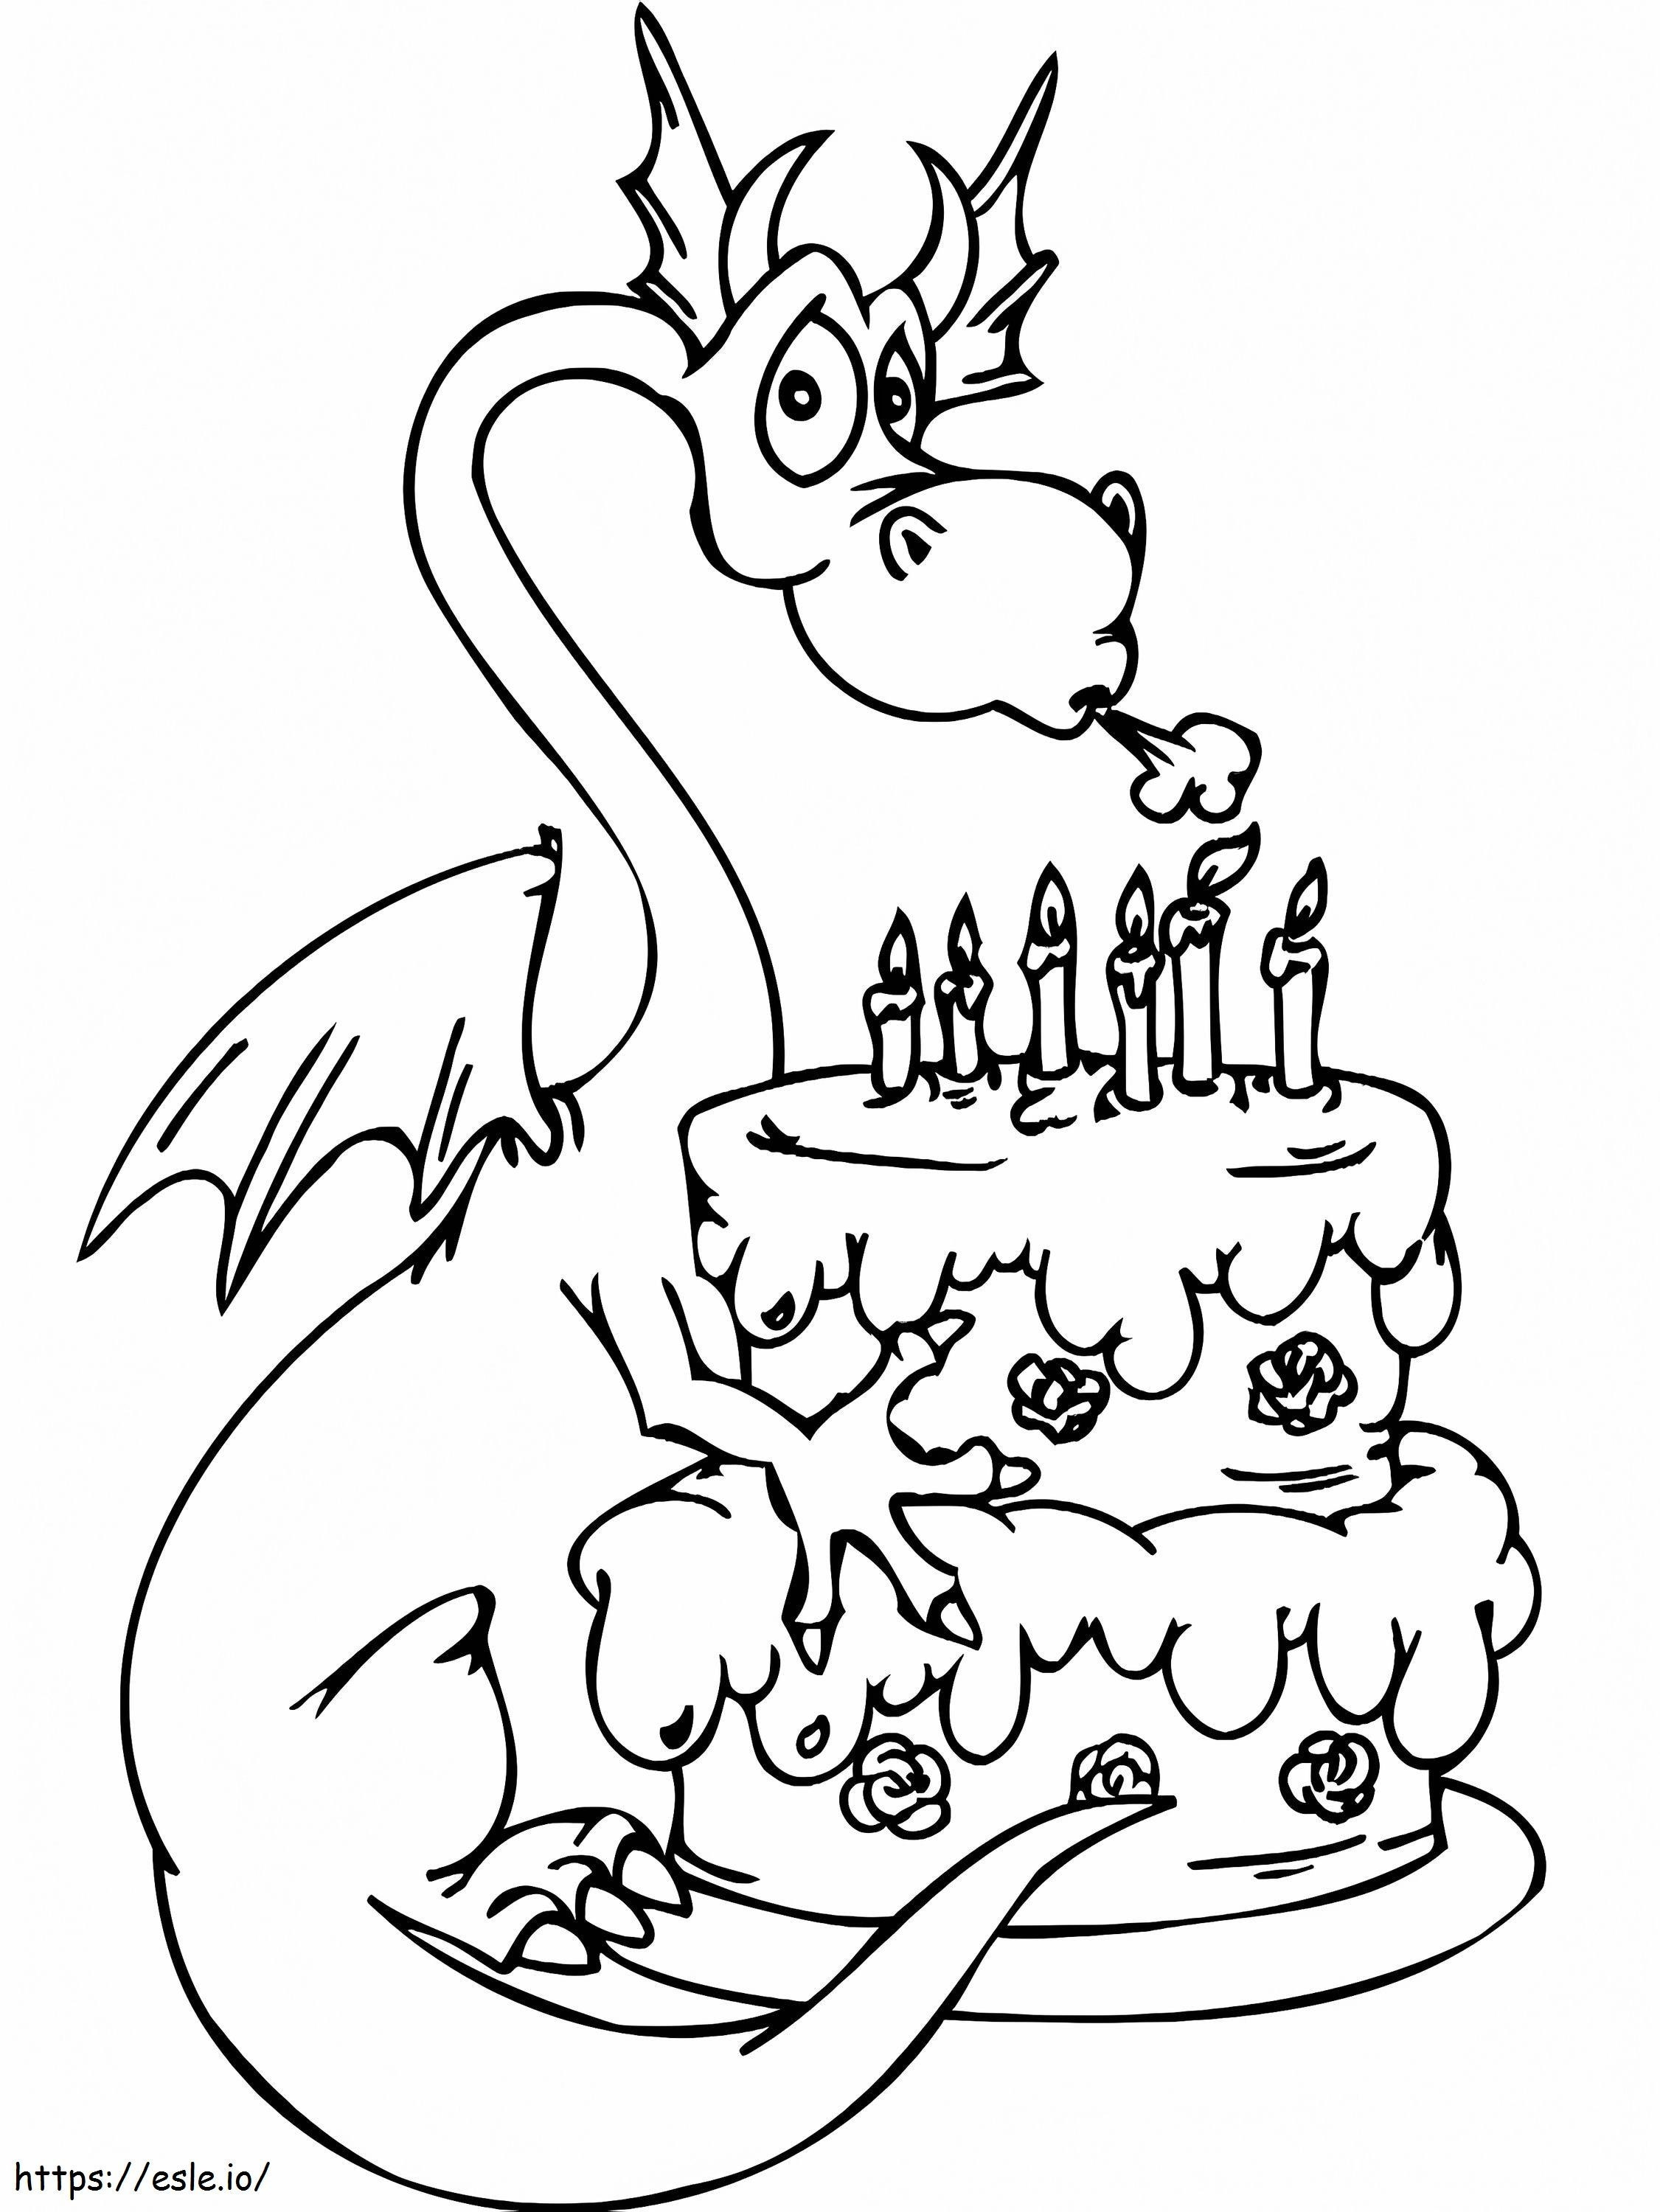  Doğum Günü Boyama C0Lorcom Cake Mutlu Yıllar Partisi boyama